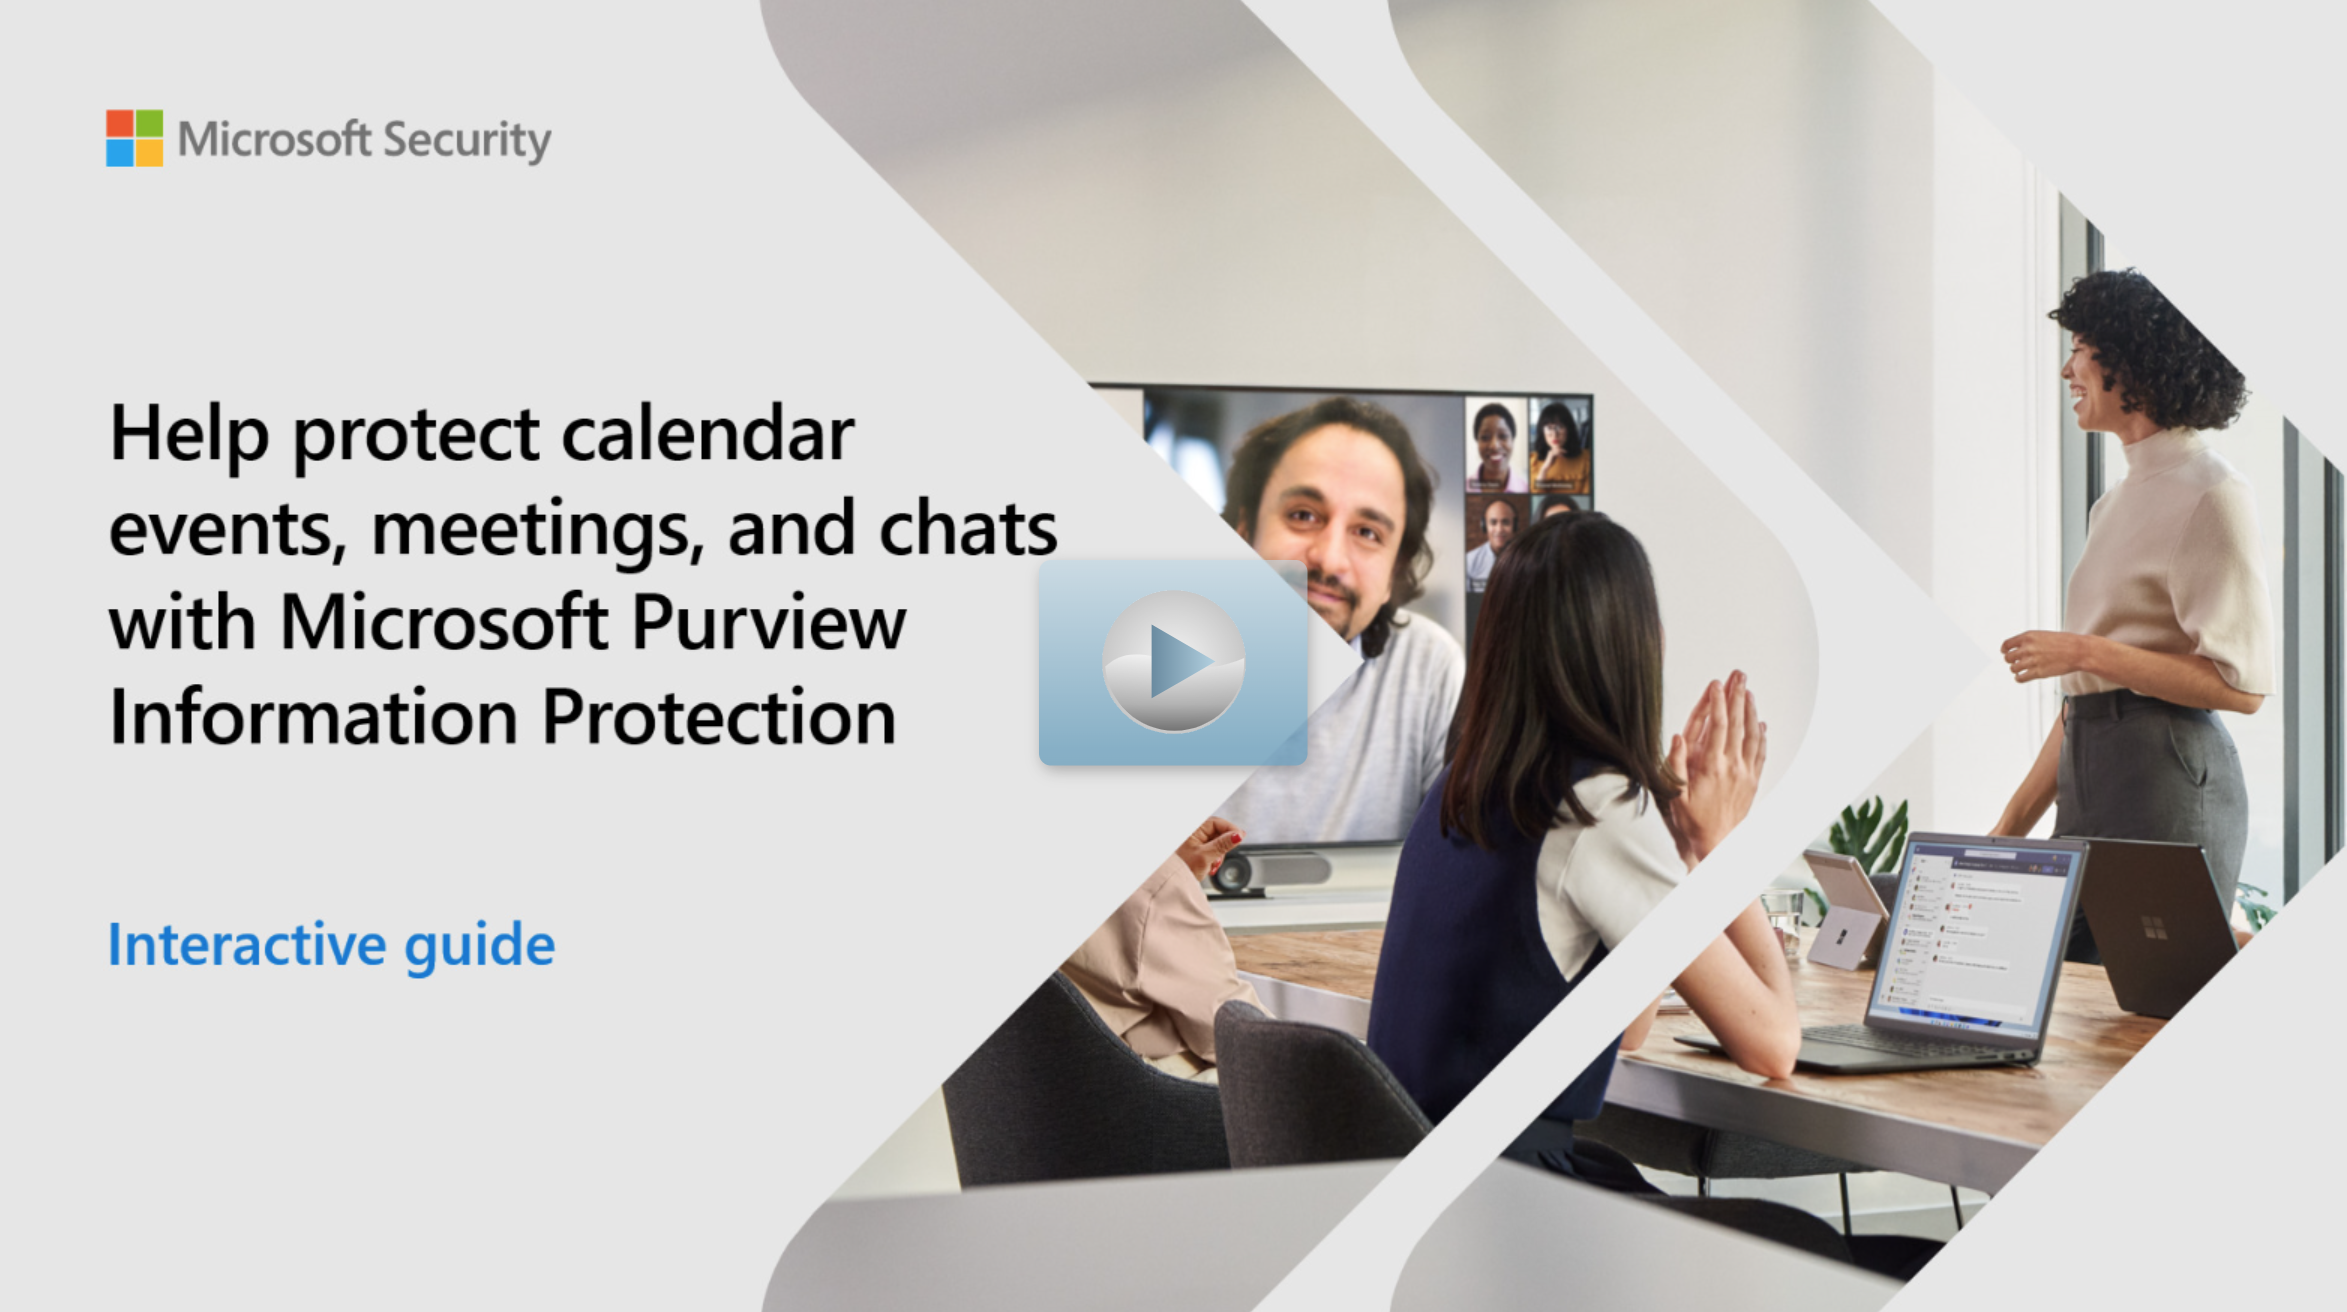 Omslagsbild för en interaktiv guide med texten Hjälp till att skydda kalenderhändelser, möten och chattar med interaktiv guide för Microsoft Purview Information Protection.